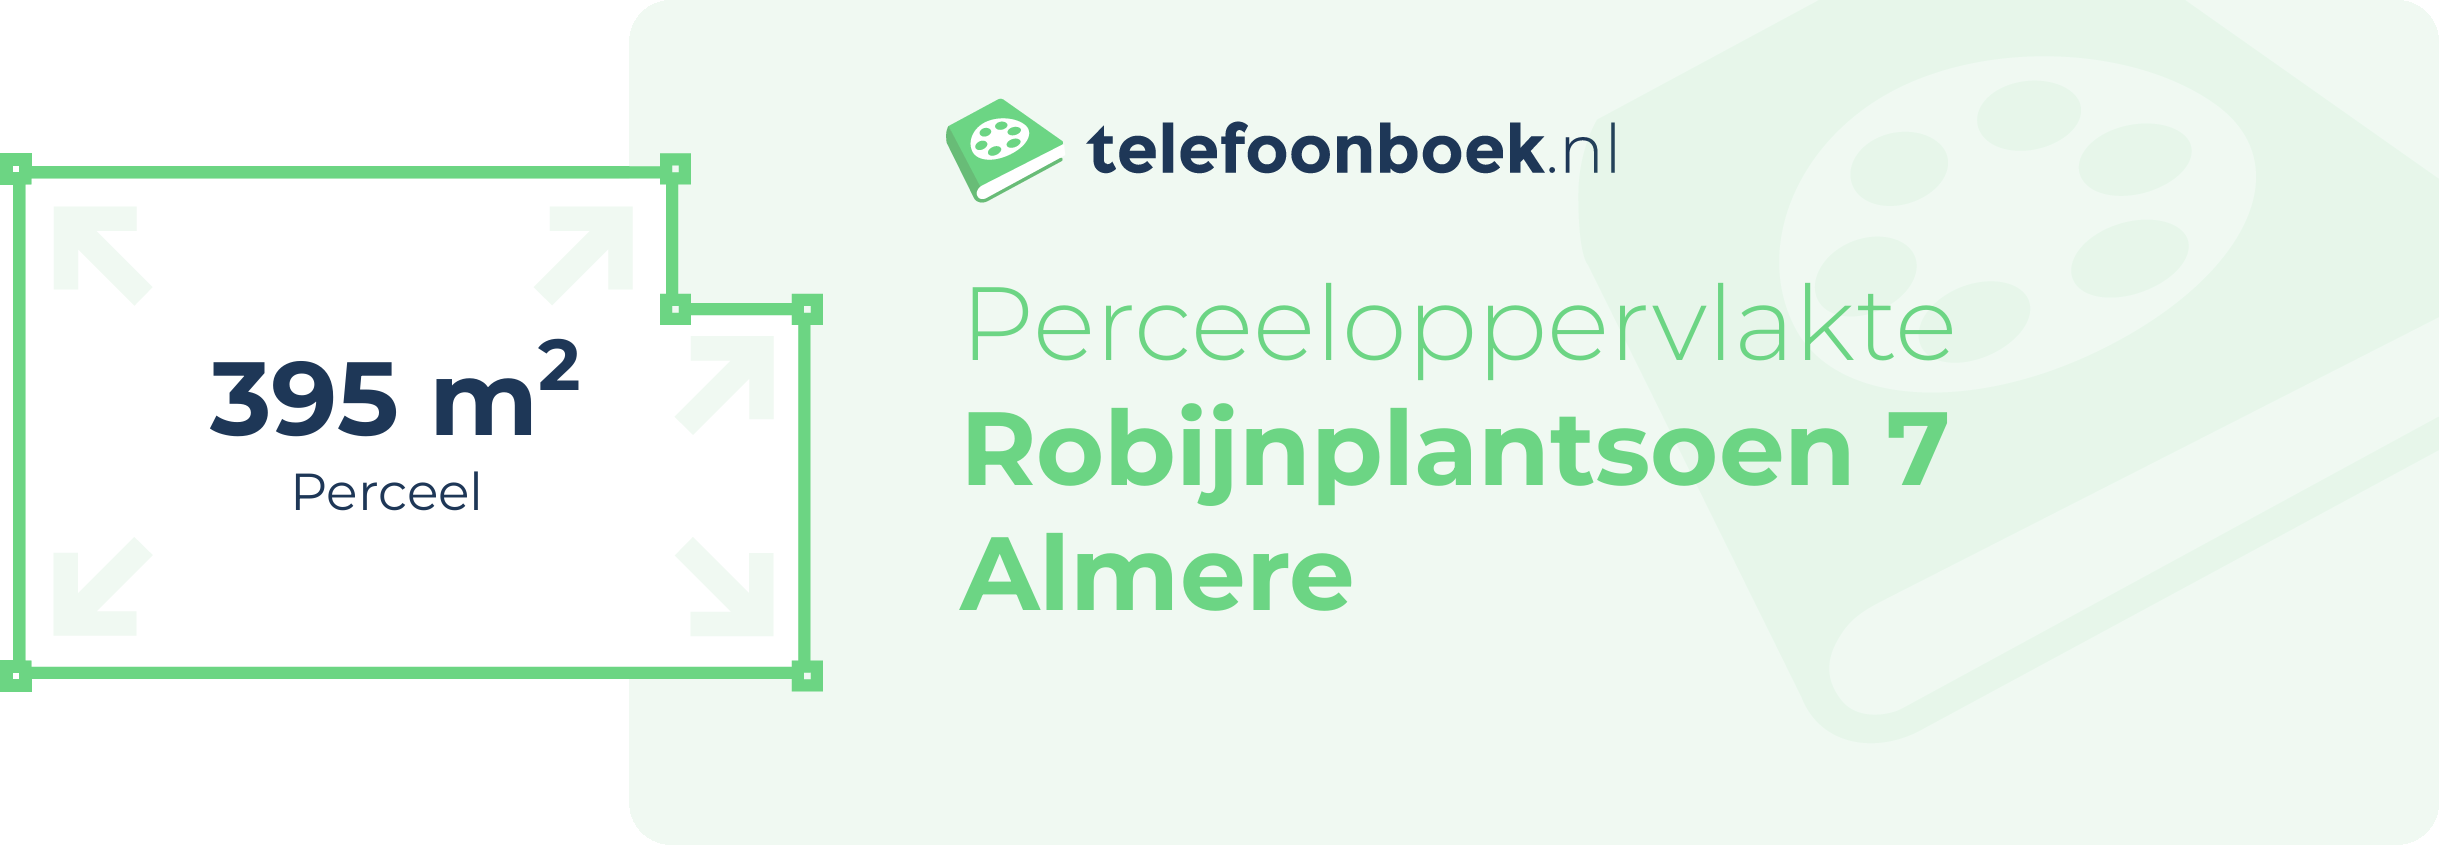 Perceeloppervlakte Robijnplantsoen 7 Almere